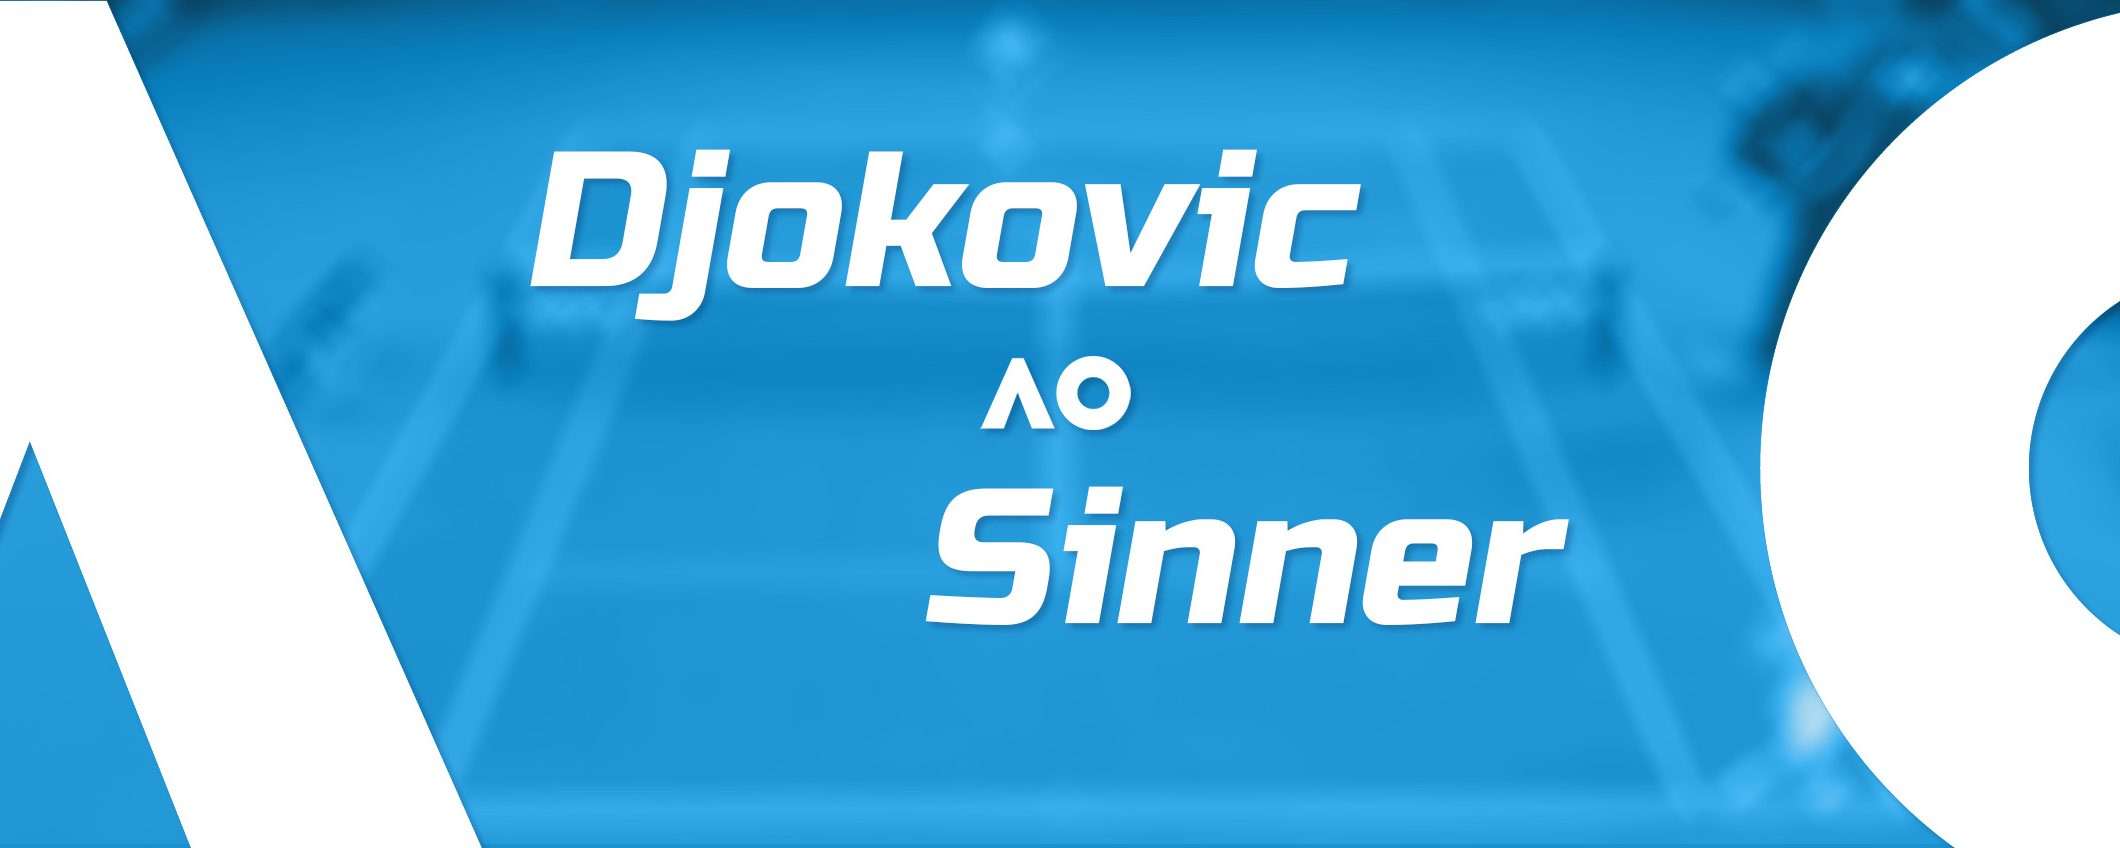 Come vedere Djokovic-Sinner in streaming dall'estero